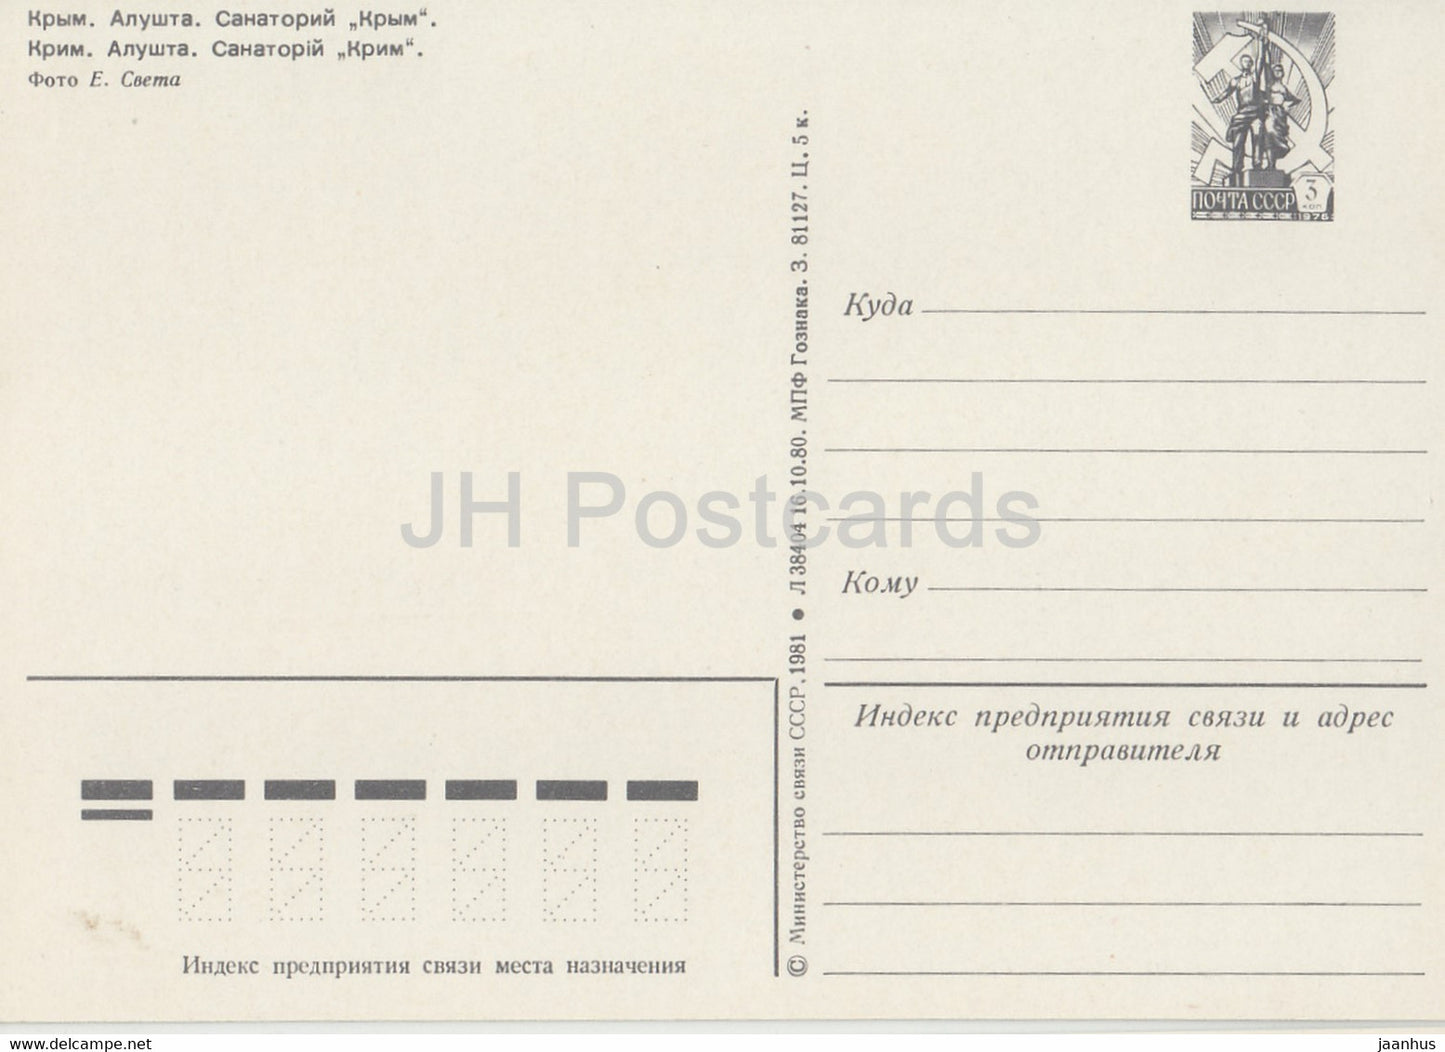 Crimée - Alouchta - sanatorium Crimée - entier postal - 1981 - Ukraine URSS - inutilisé